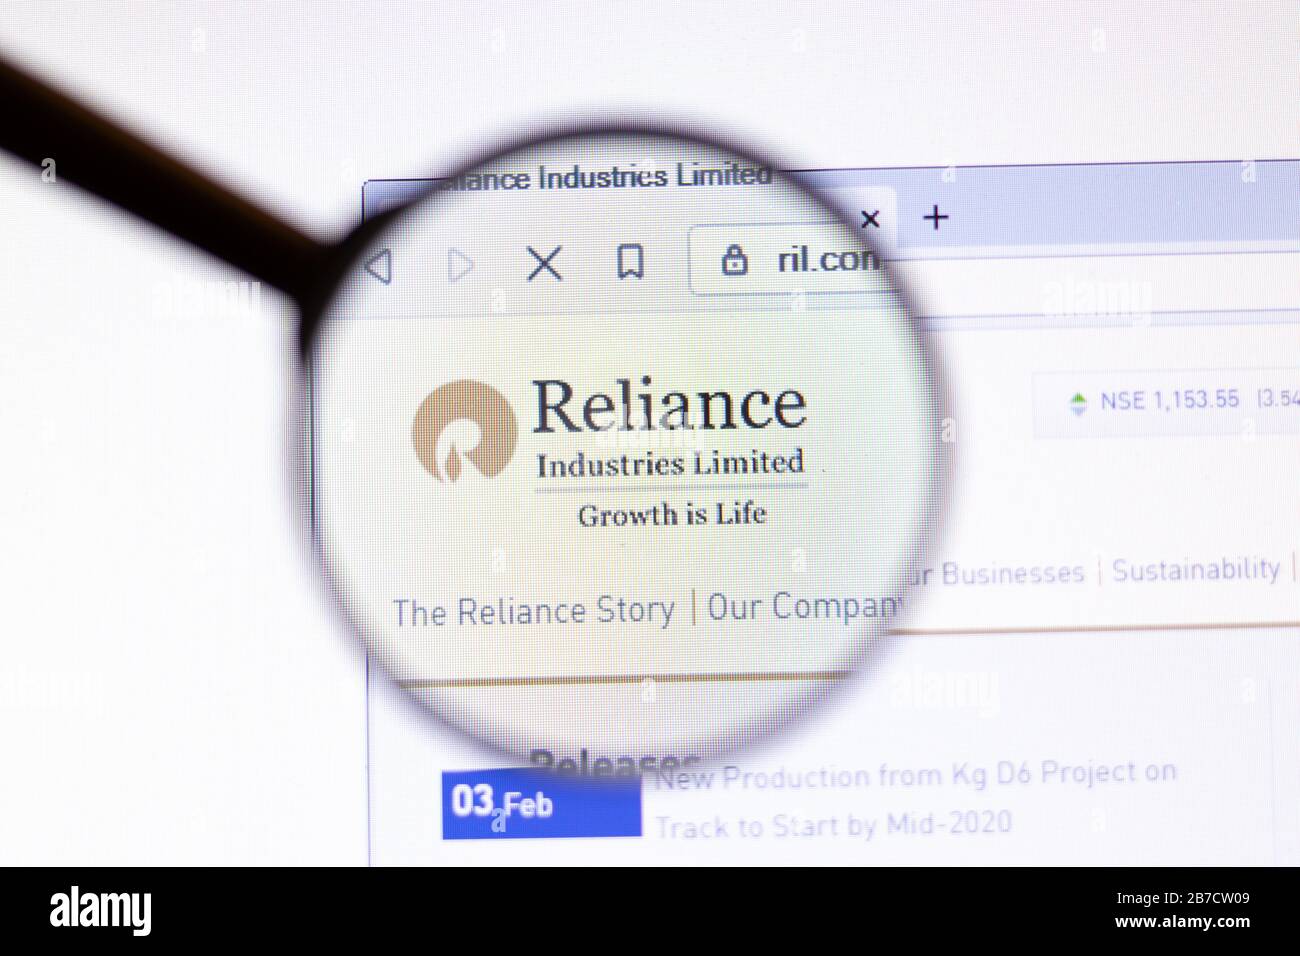 Los Angeles, Kalifornien, USA - 15. März 2020: Symbol von Reliance Industries auf der Webseite. Das Ril.com Logo wird auf dem Bildschirm angezeigt, und es wird eine Illustration Editorial angezeigt Stockfoto